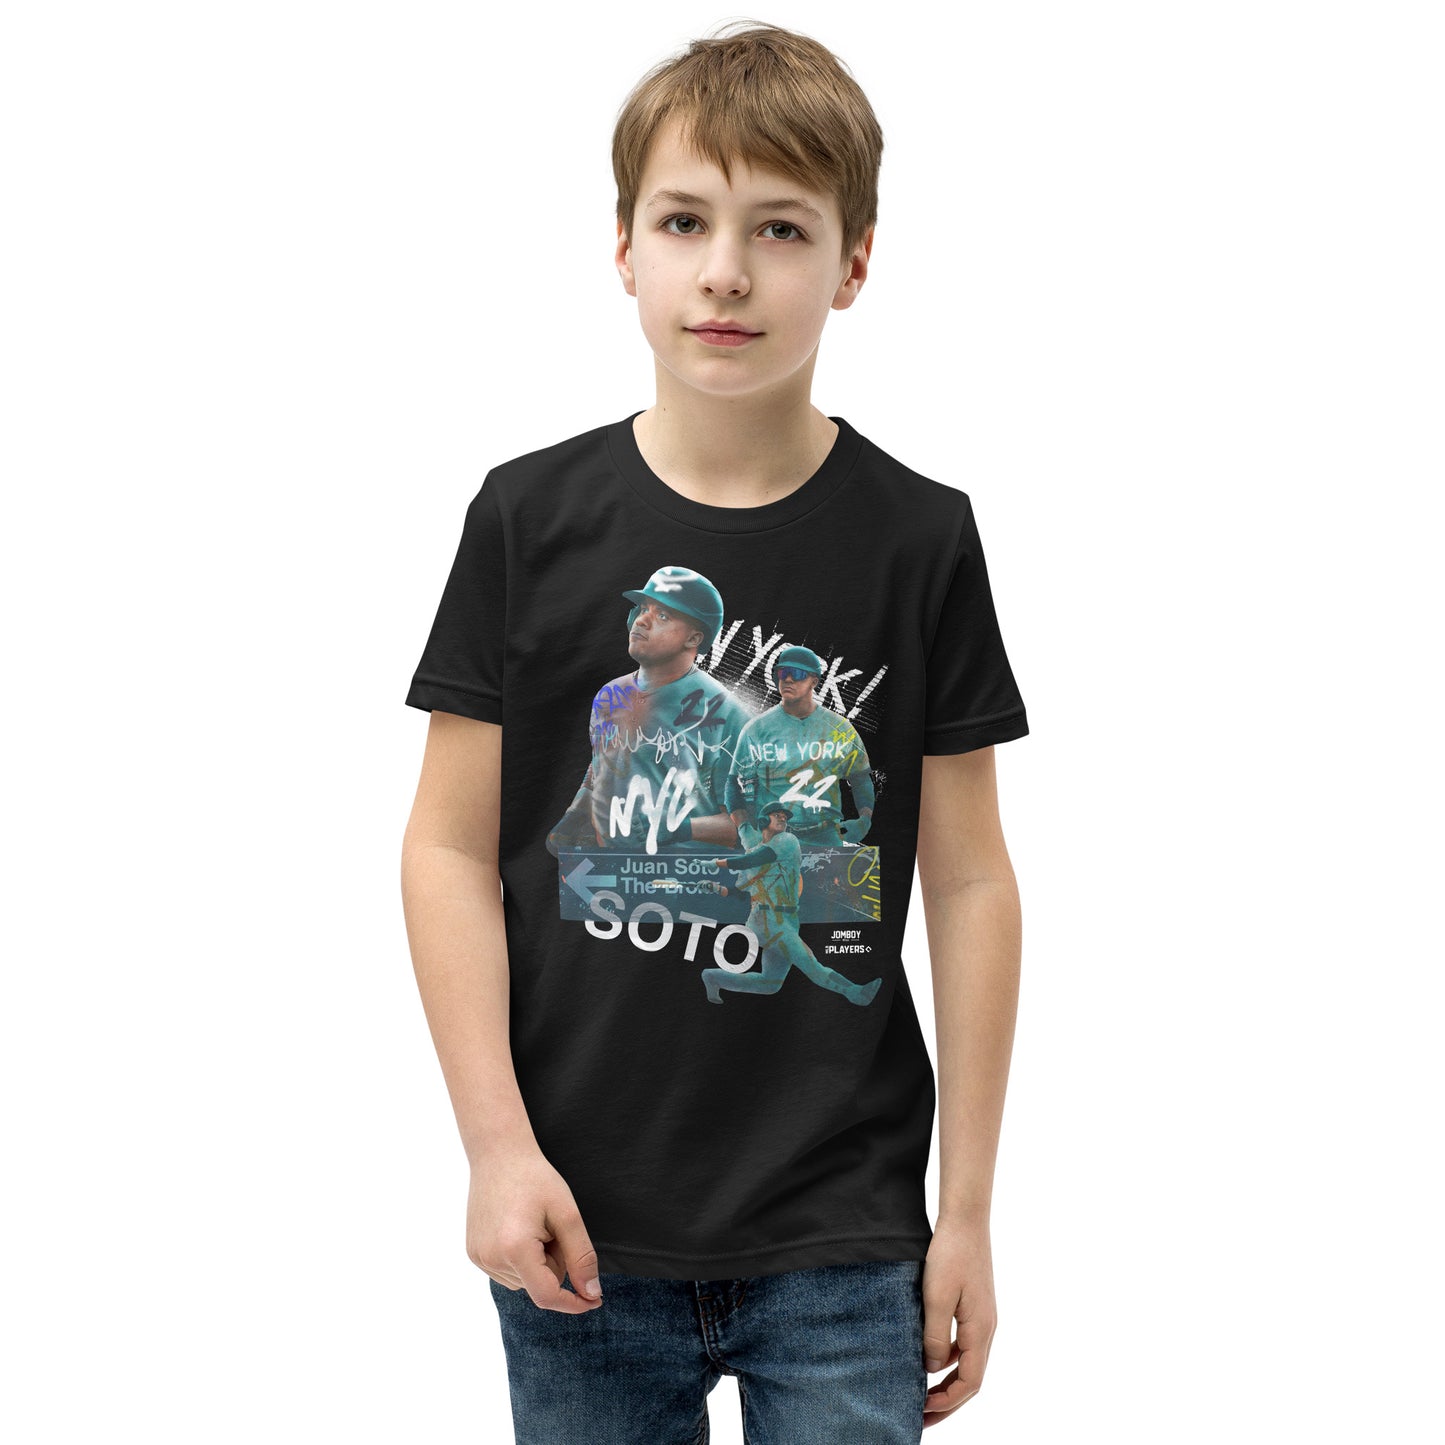 Subway Soto | Youth T-Shirt